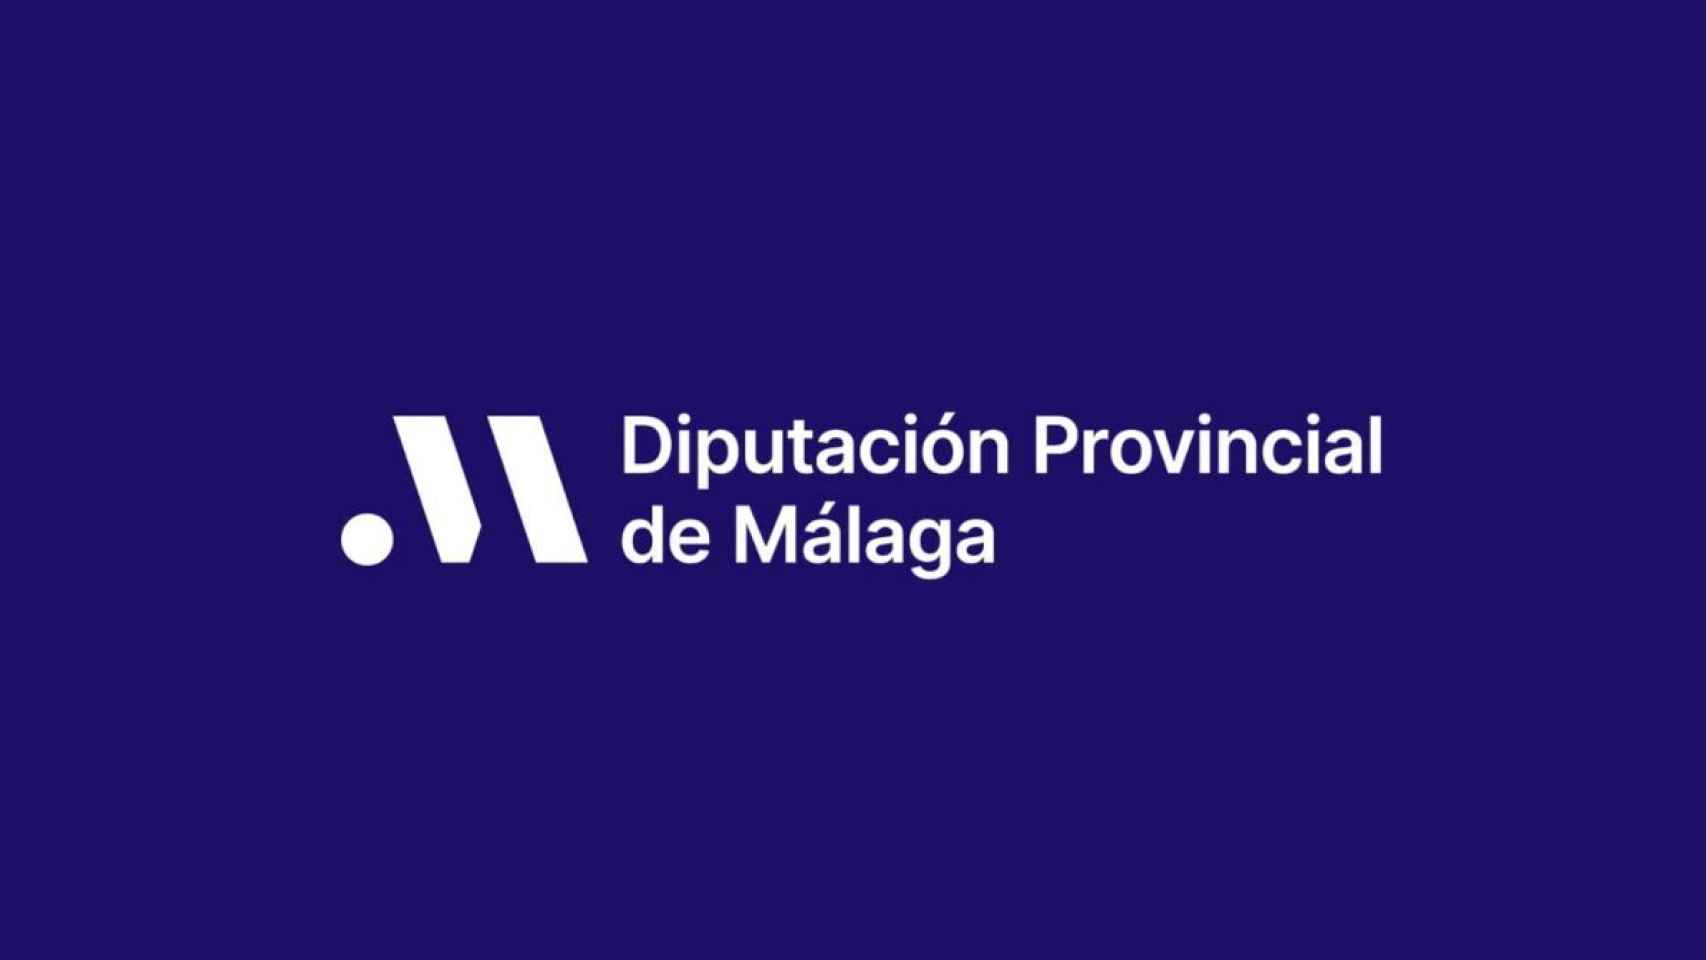 Nueva imagen de marca de la Diputación Provincial de Málaga.